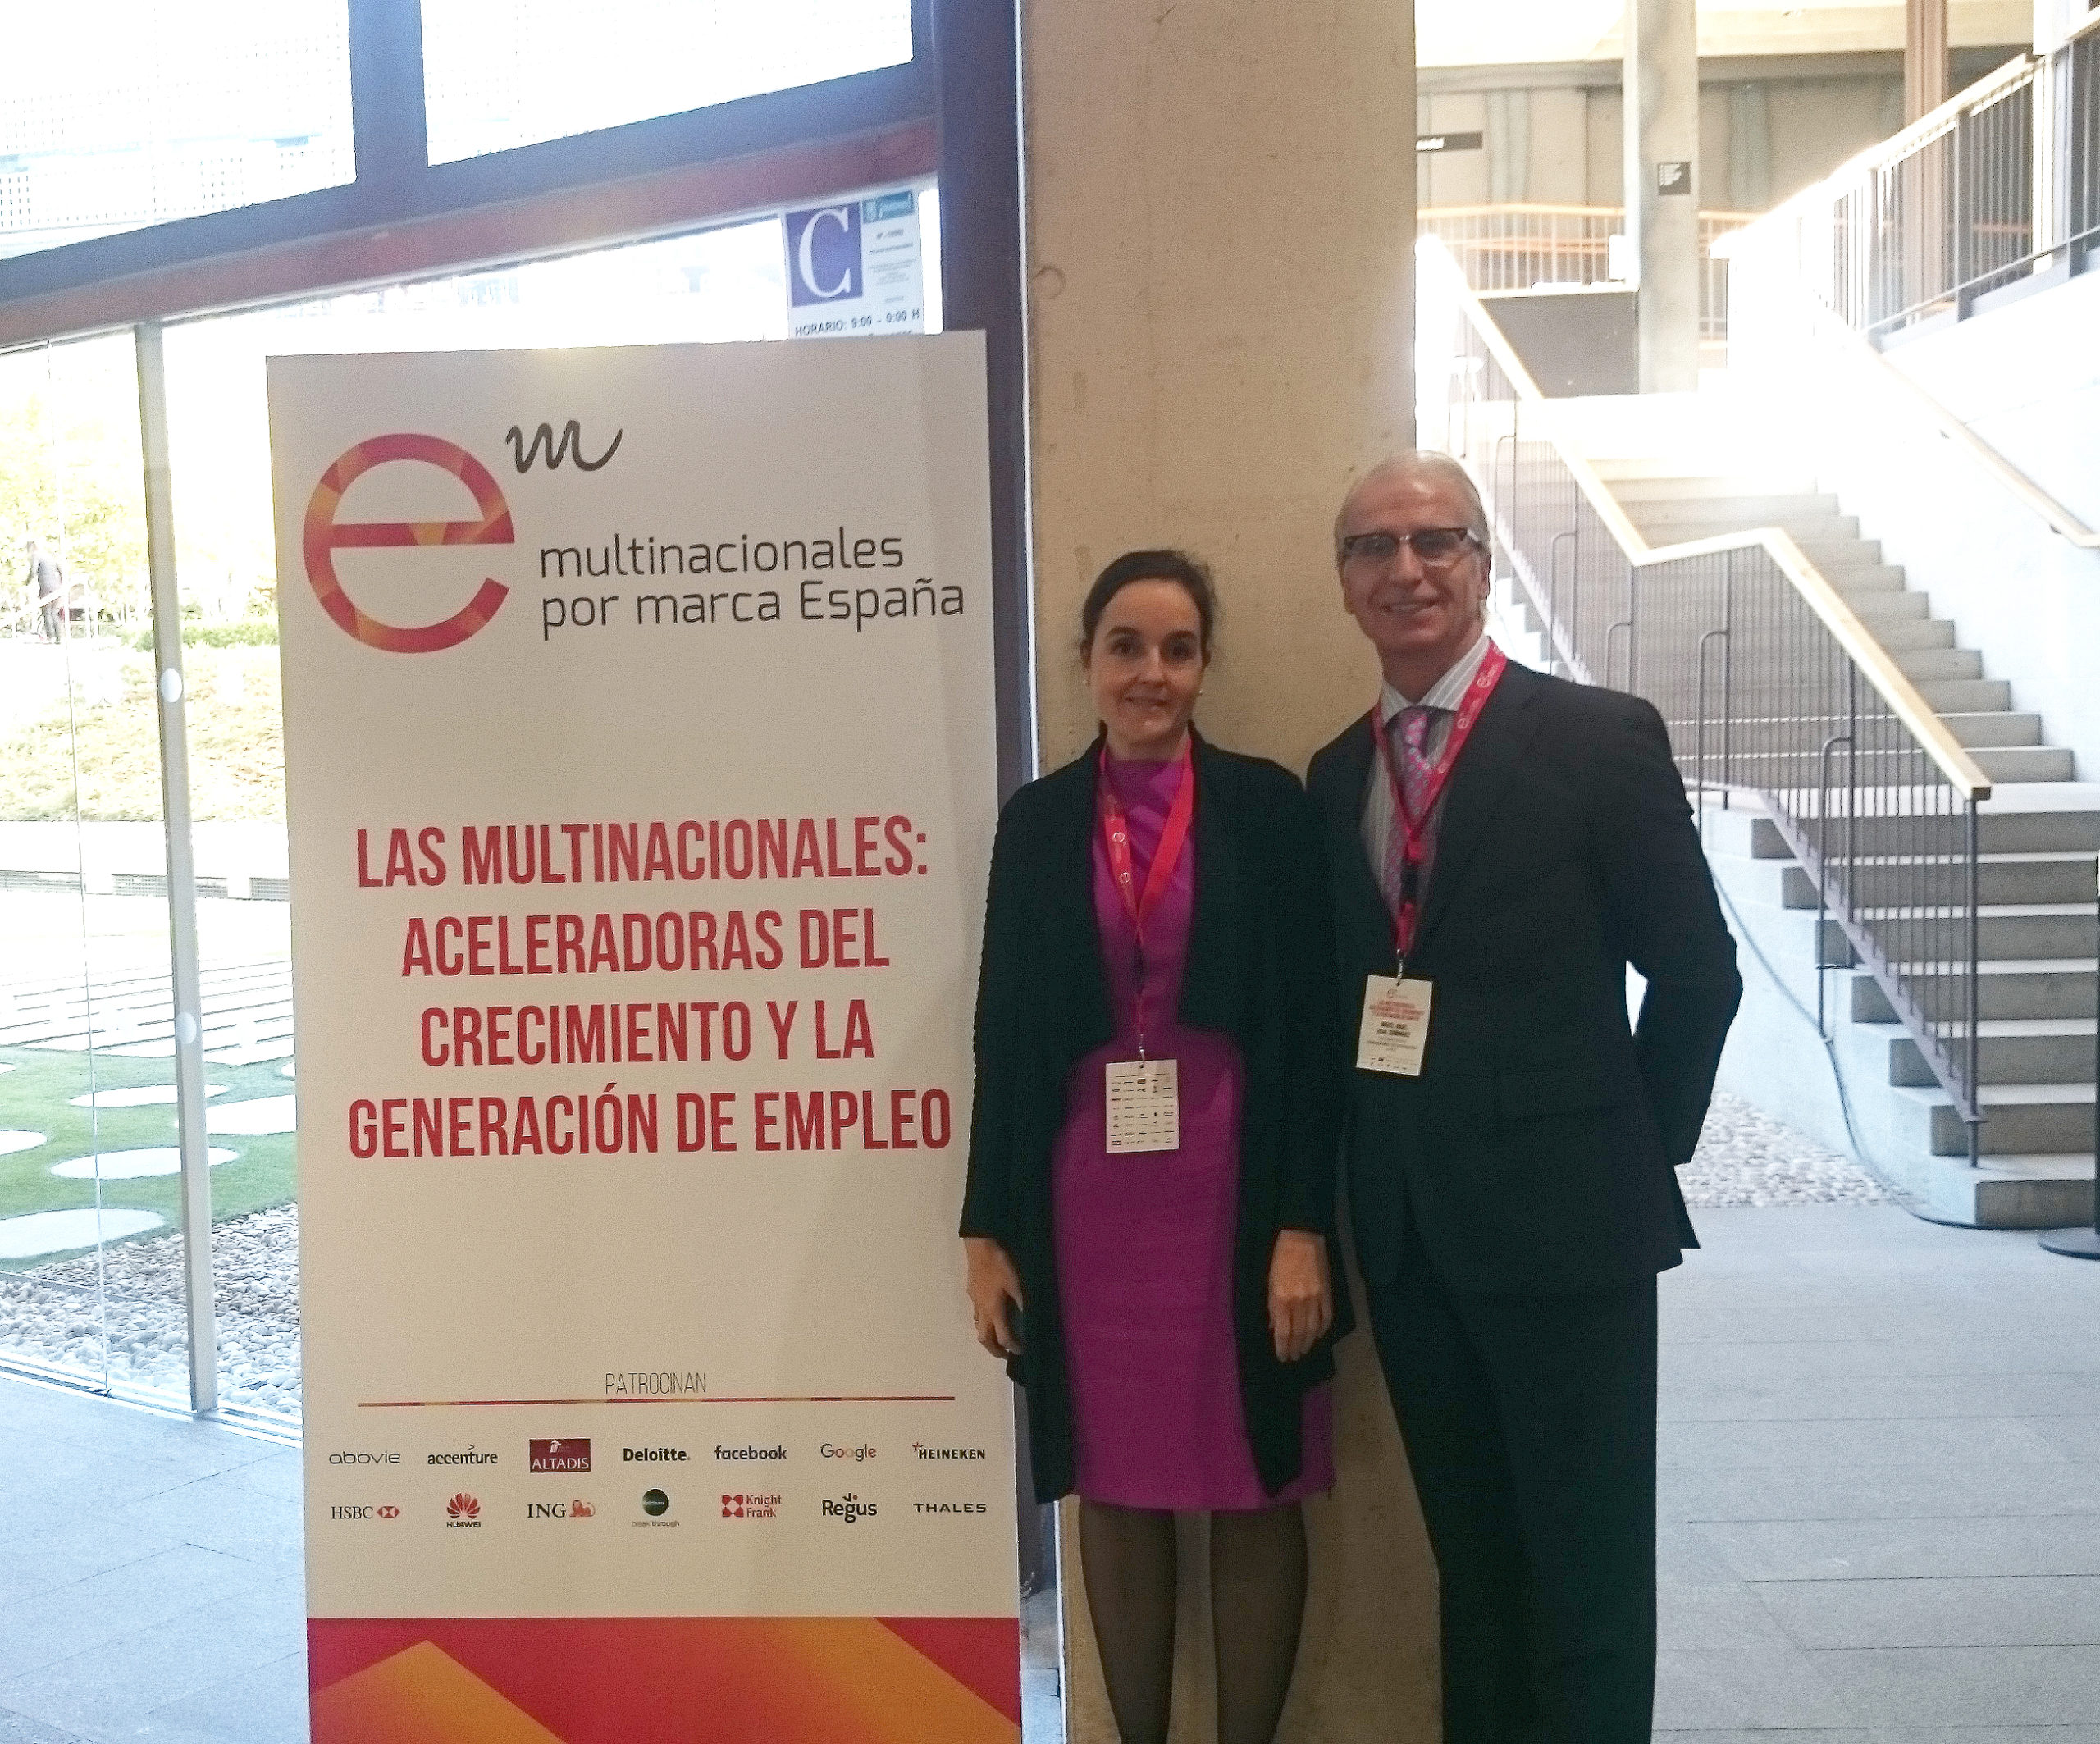 Asistencia del FEEX al Congreso Anual de la Asociación Multinacionales por marca España